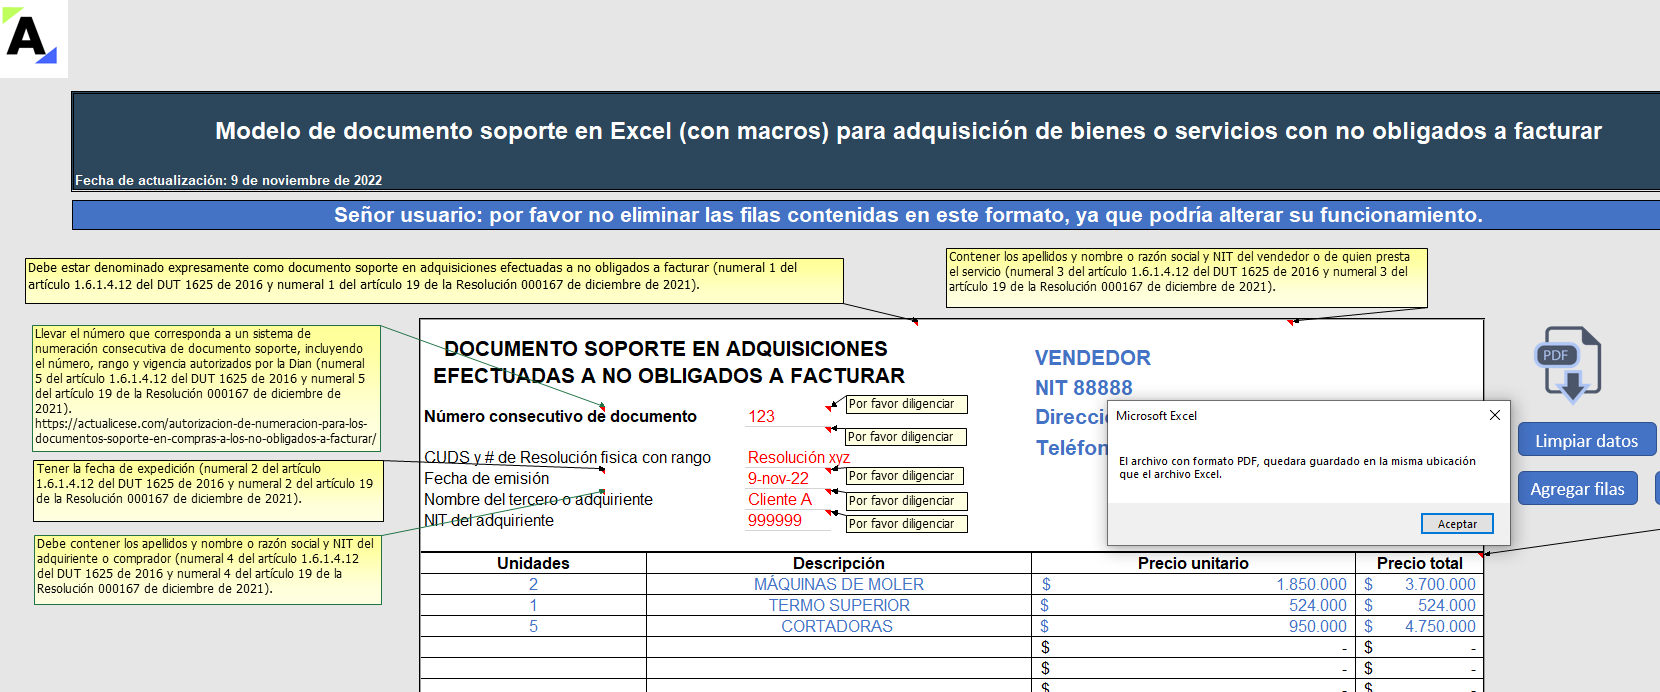 Modelo en Excel (con macros) del documento soporte para operaciones con no obligados a facturar